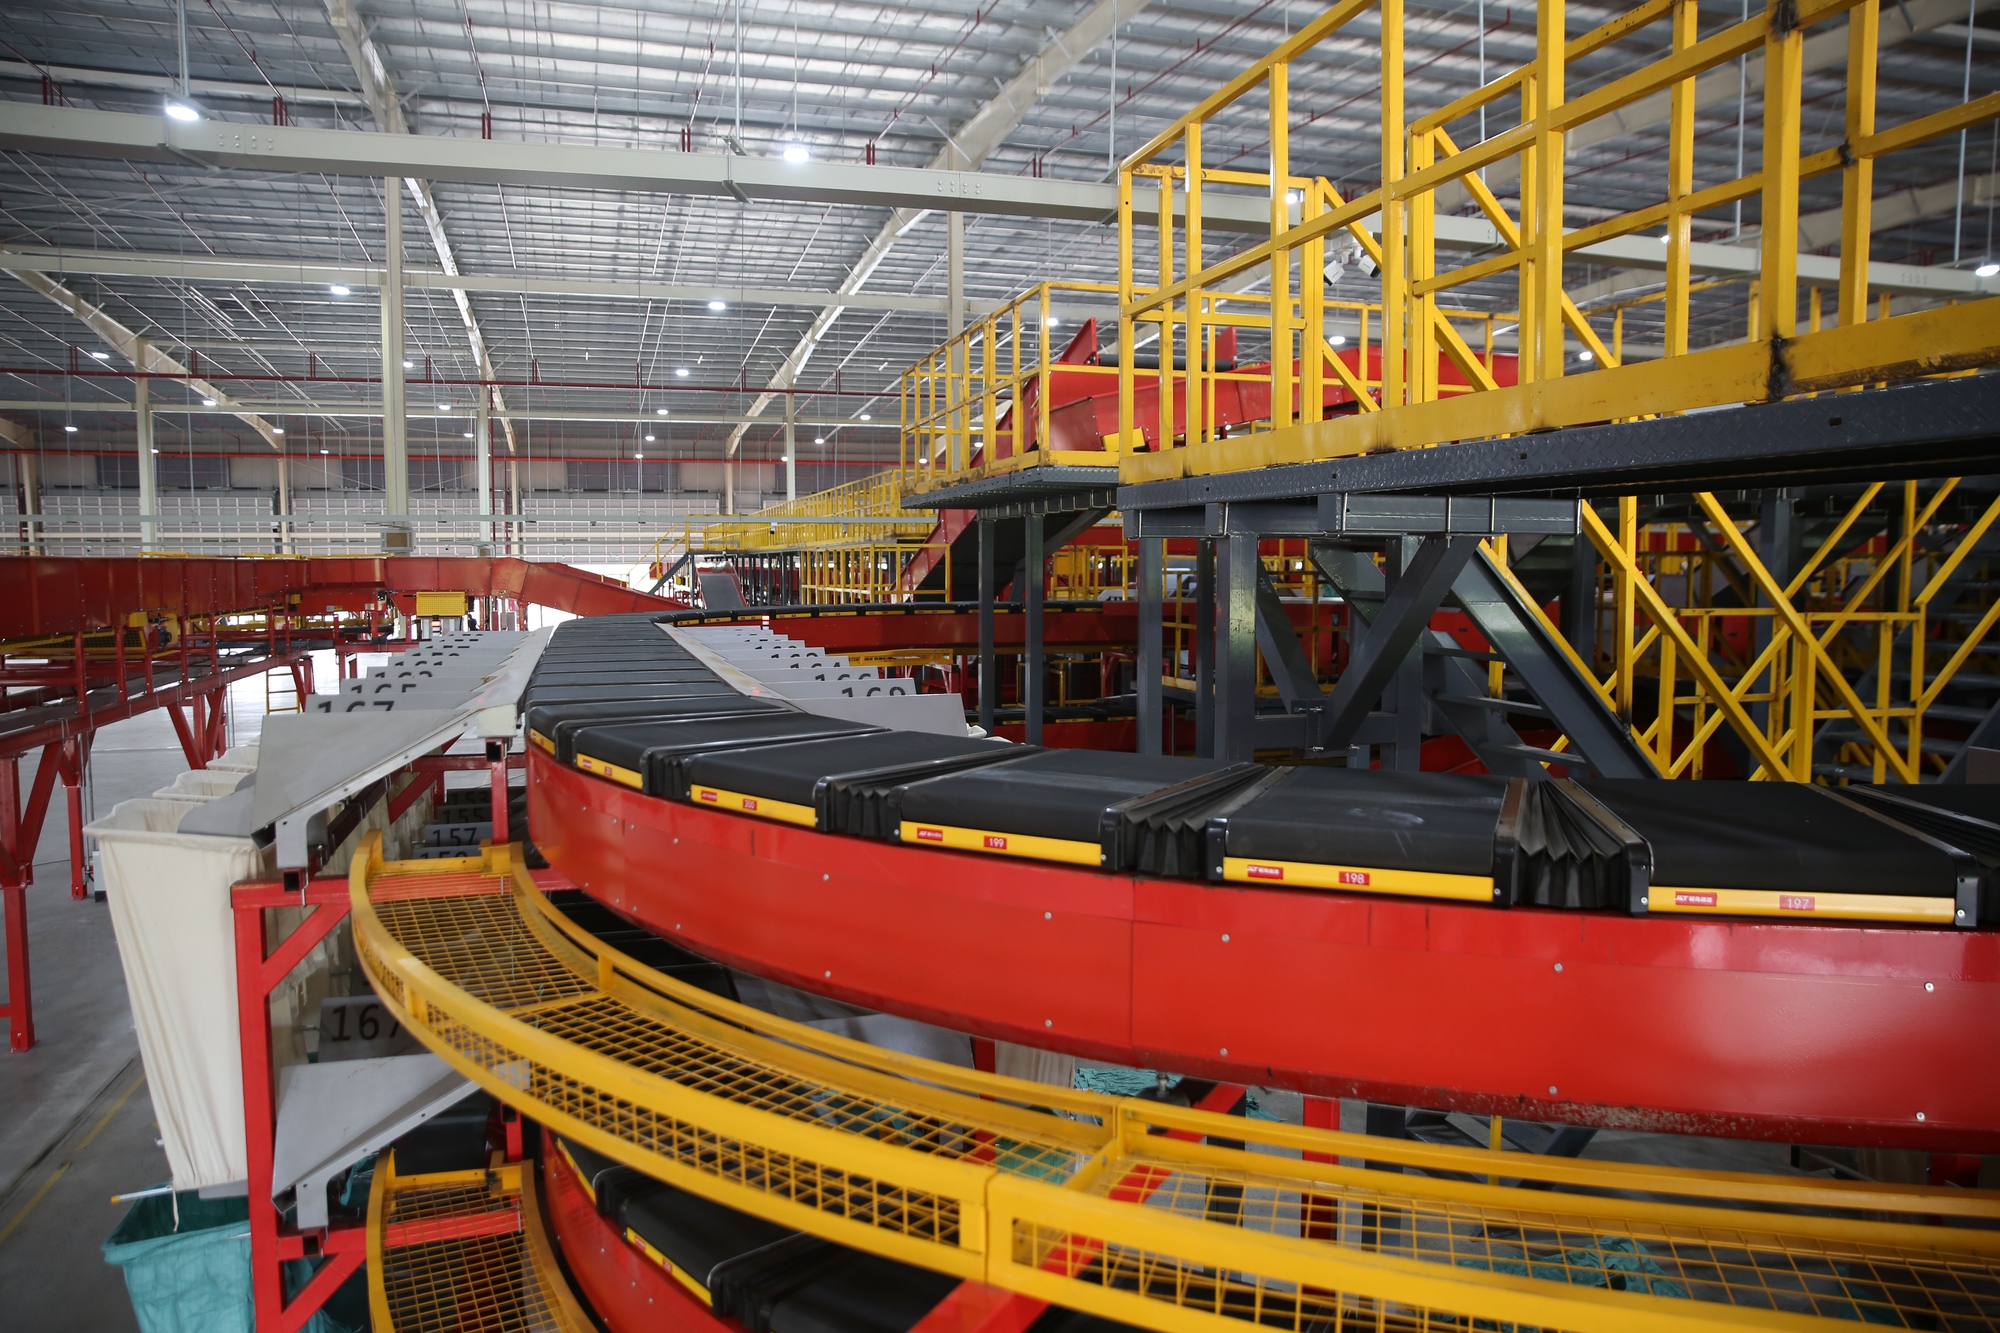 [Inside Factory] Soi trung tâm trung chuyển lớn nhất của J&T Express tại Việt Nam: Quy mô bằng chục trung tâm cộng lại, chỉ cần 30 - 40% nhân lực, xử lý 2 triệu kiện hàng/ngày - Ảnh 5.